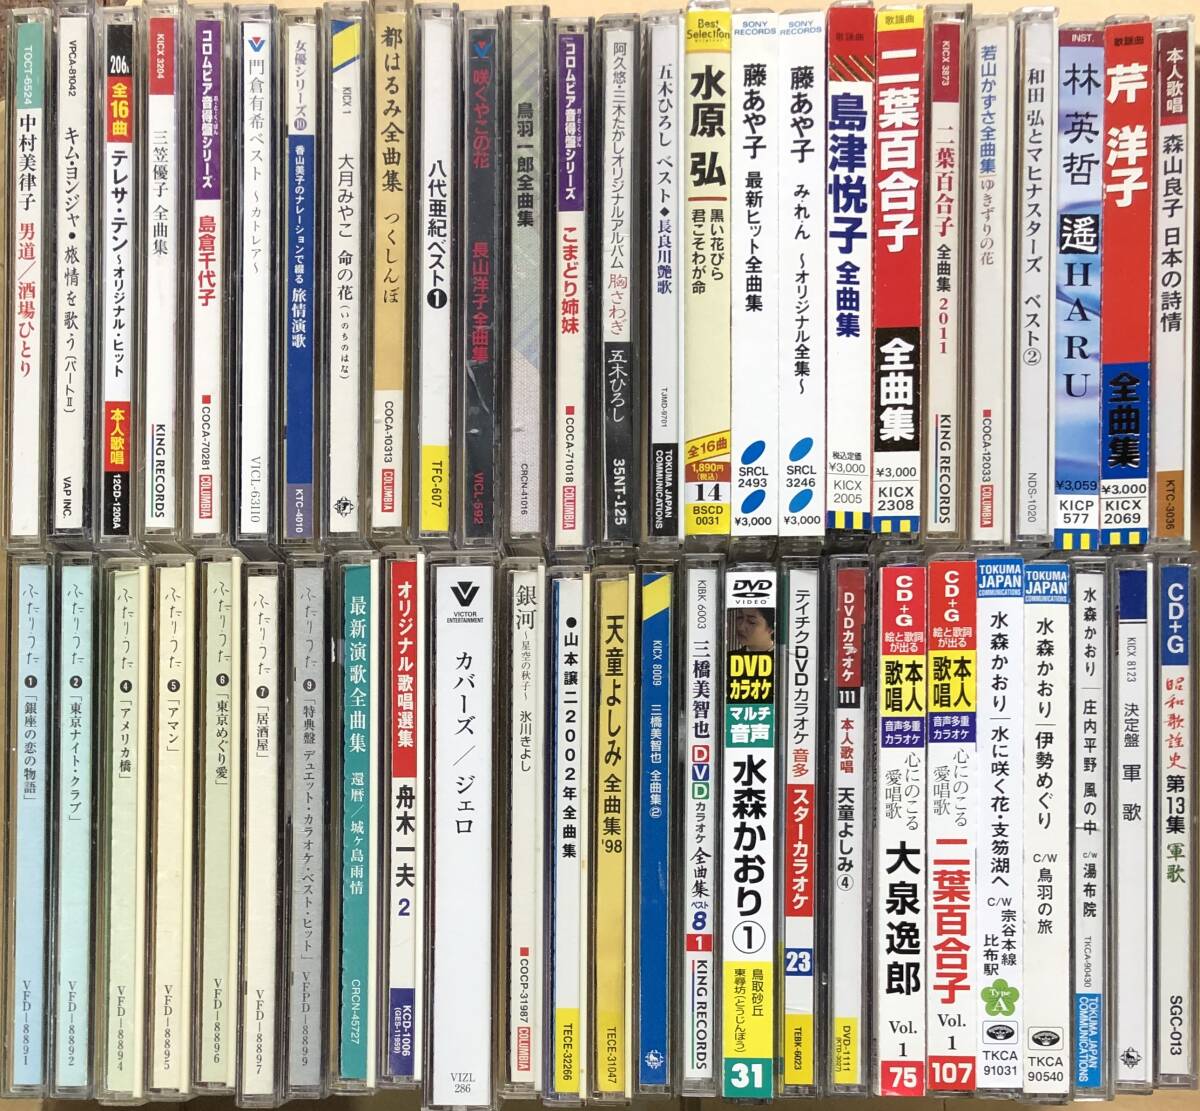 演歌、歌謡曲など,いろいろまとめてCD50枚セット 八代亜紀、藤あや子、二葉百合子 ほか の画像1